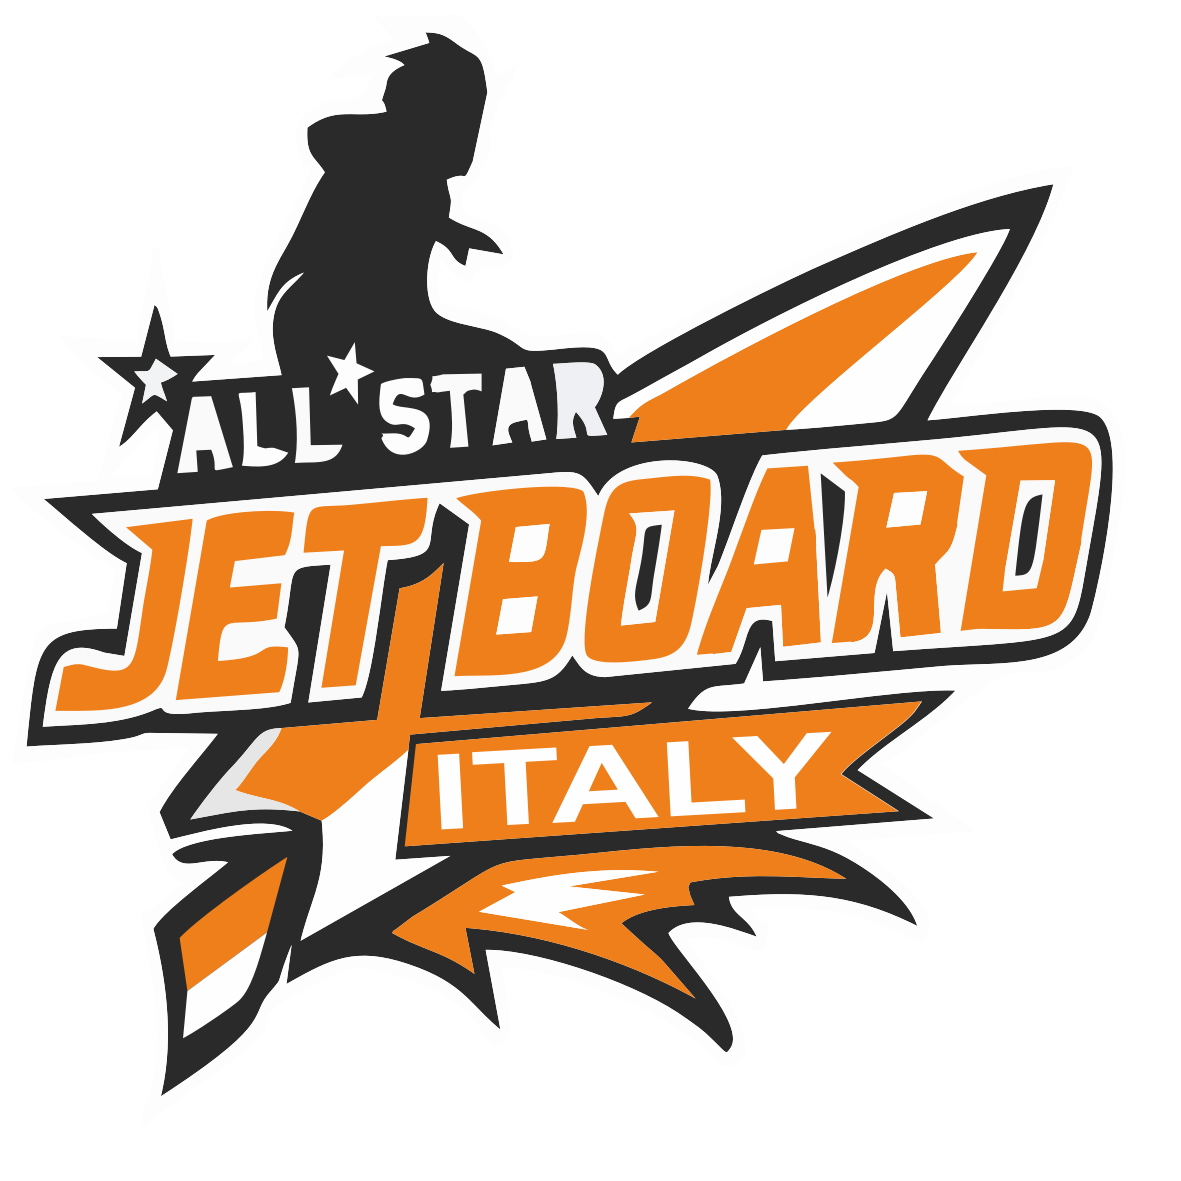 Jetboard Italy